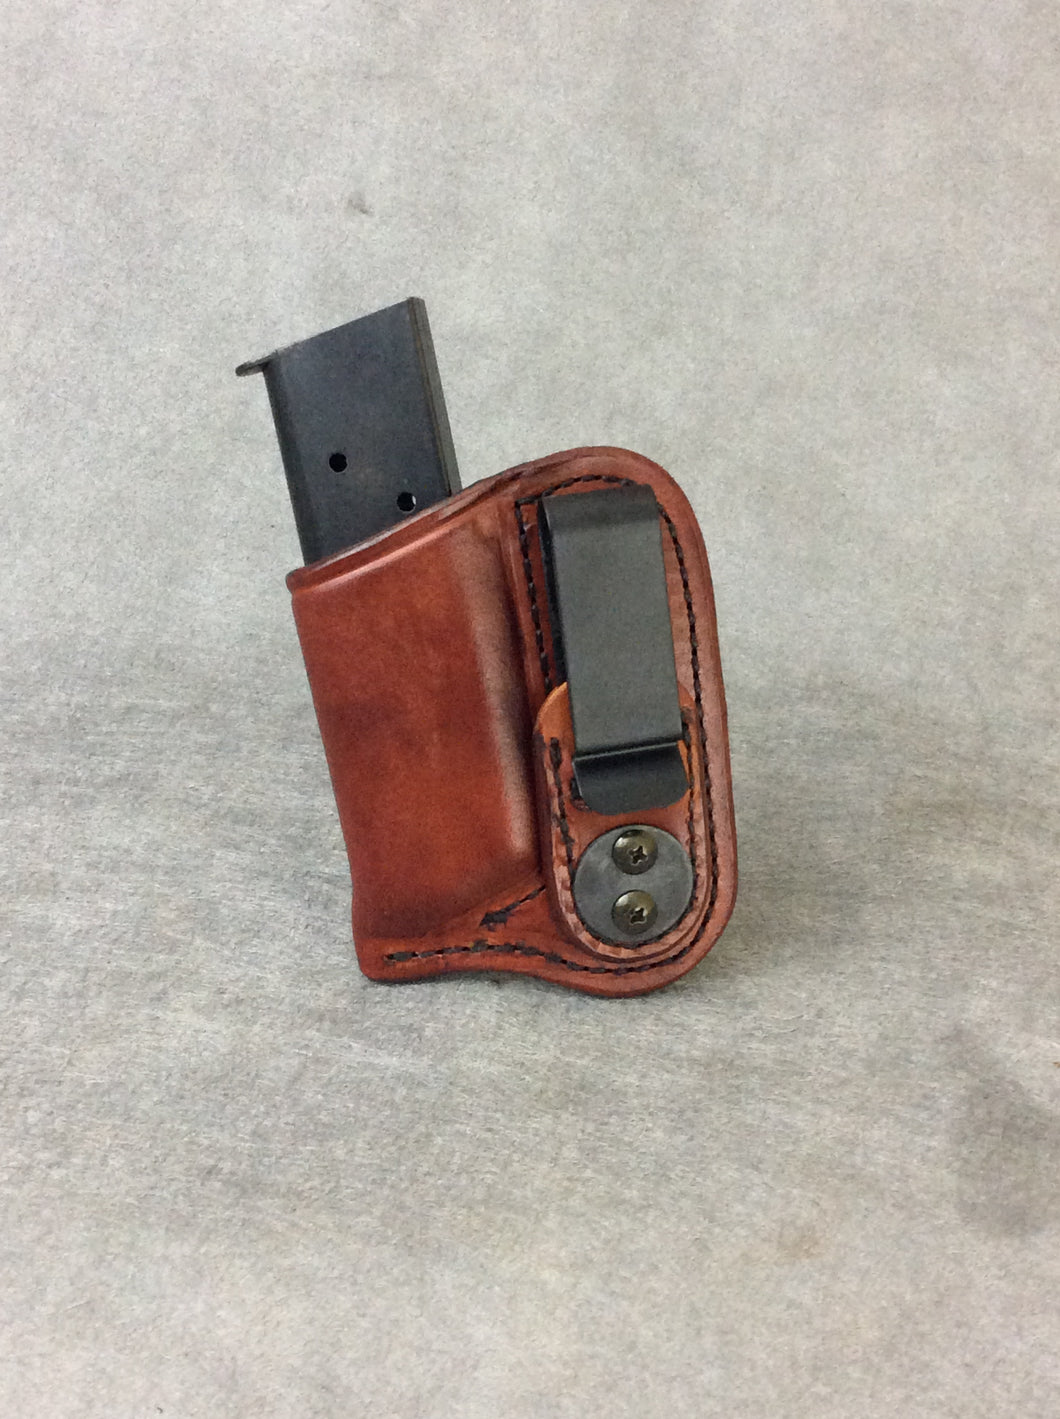 9mm IWB Concealed Leather Single Magazine Holder